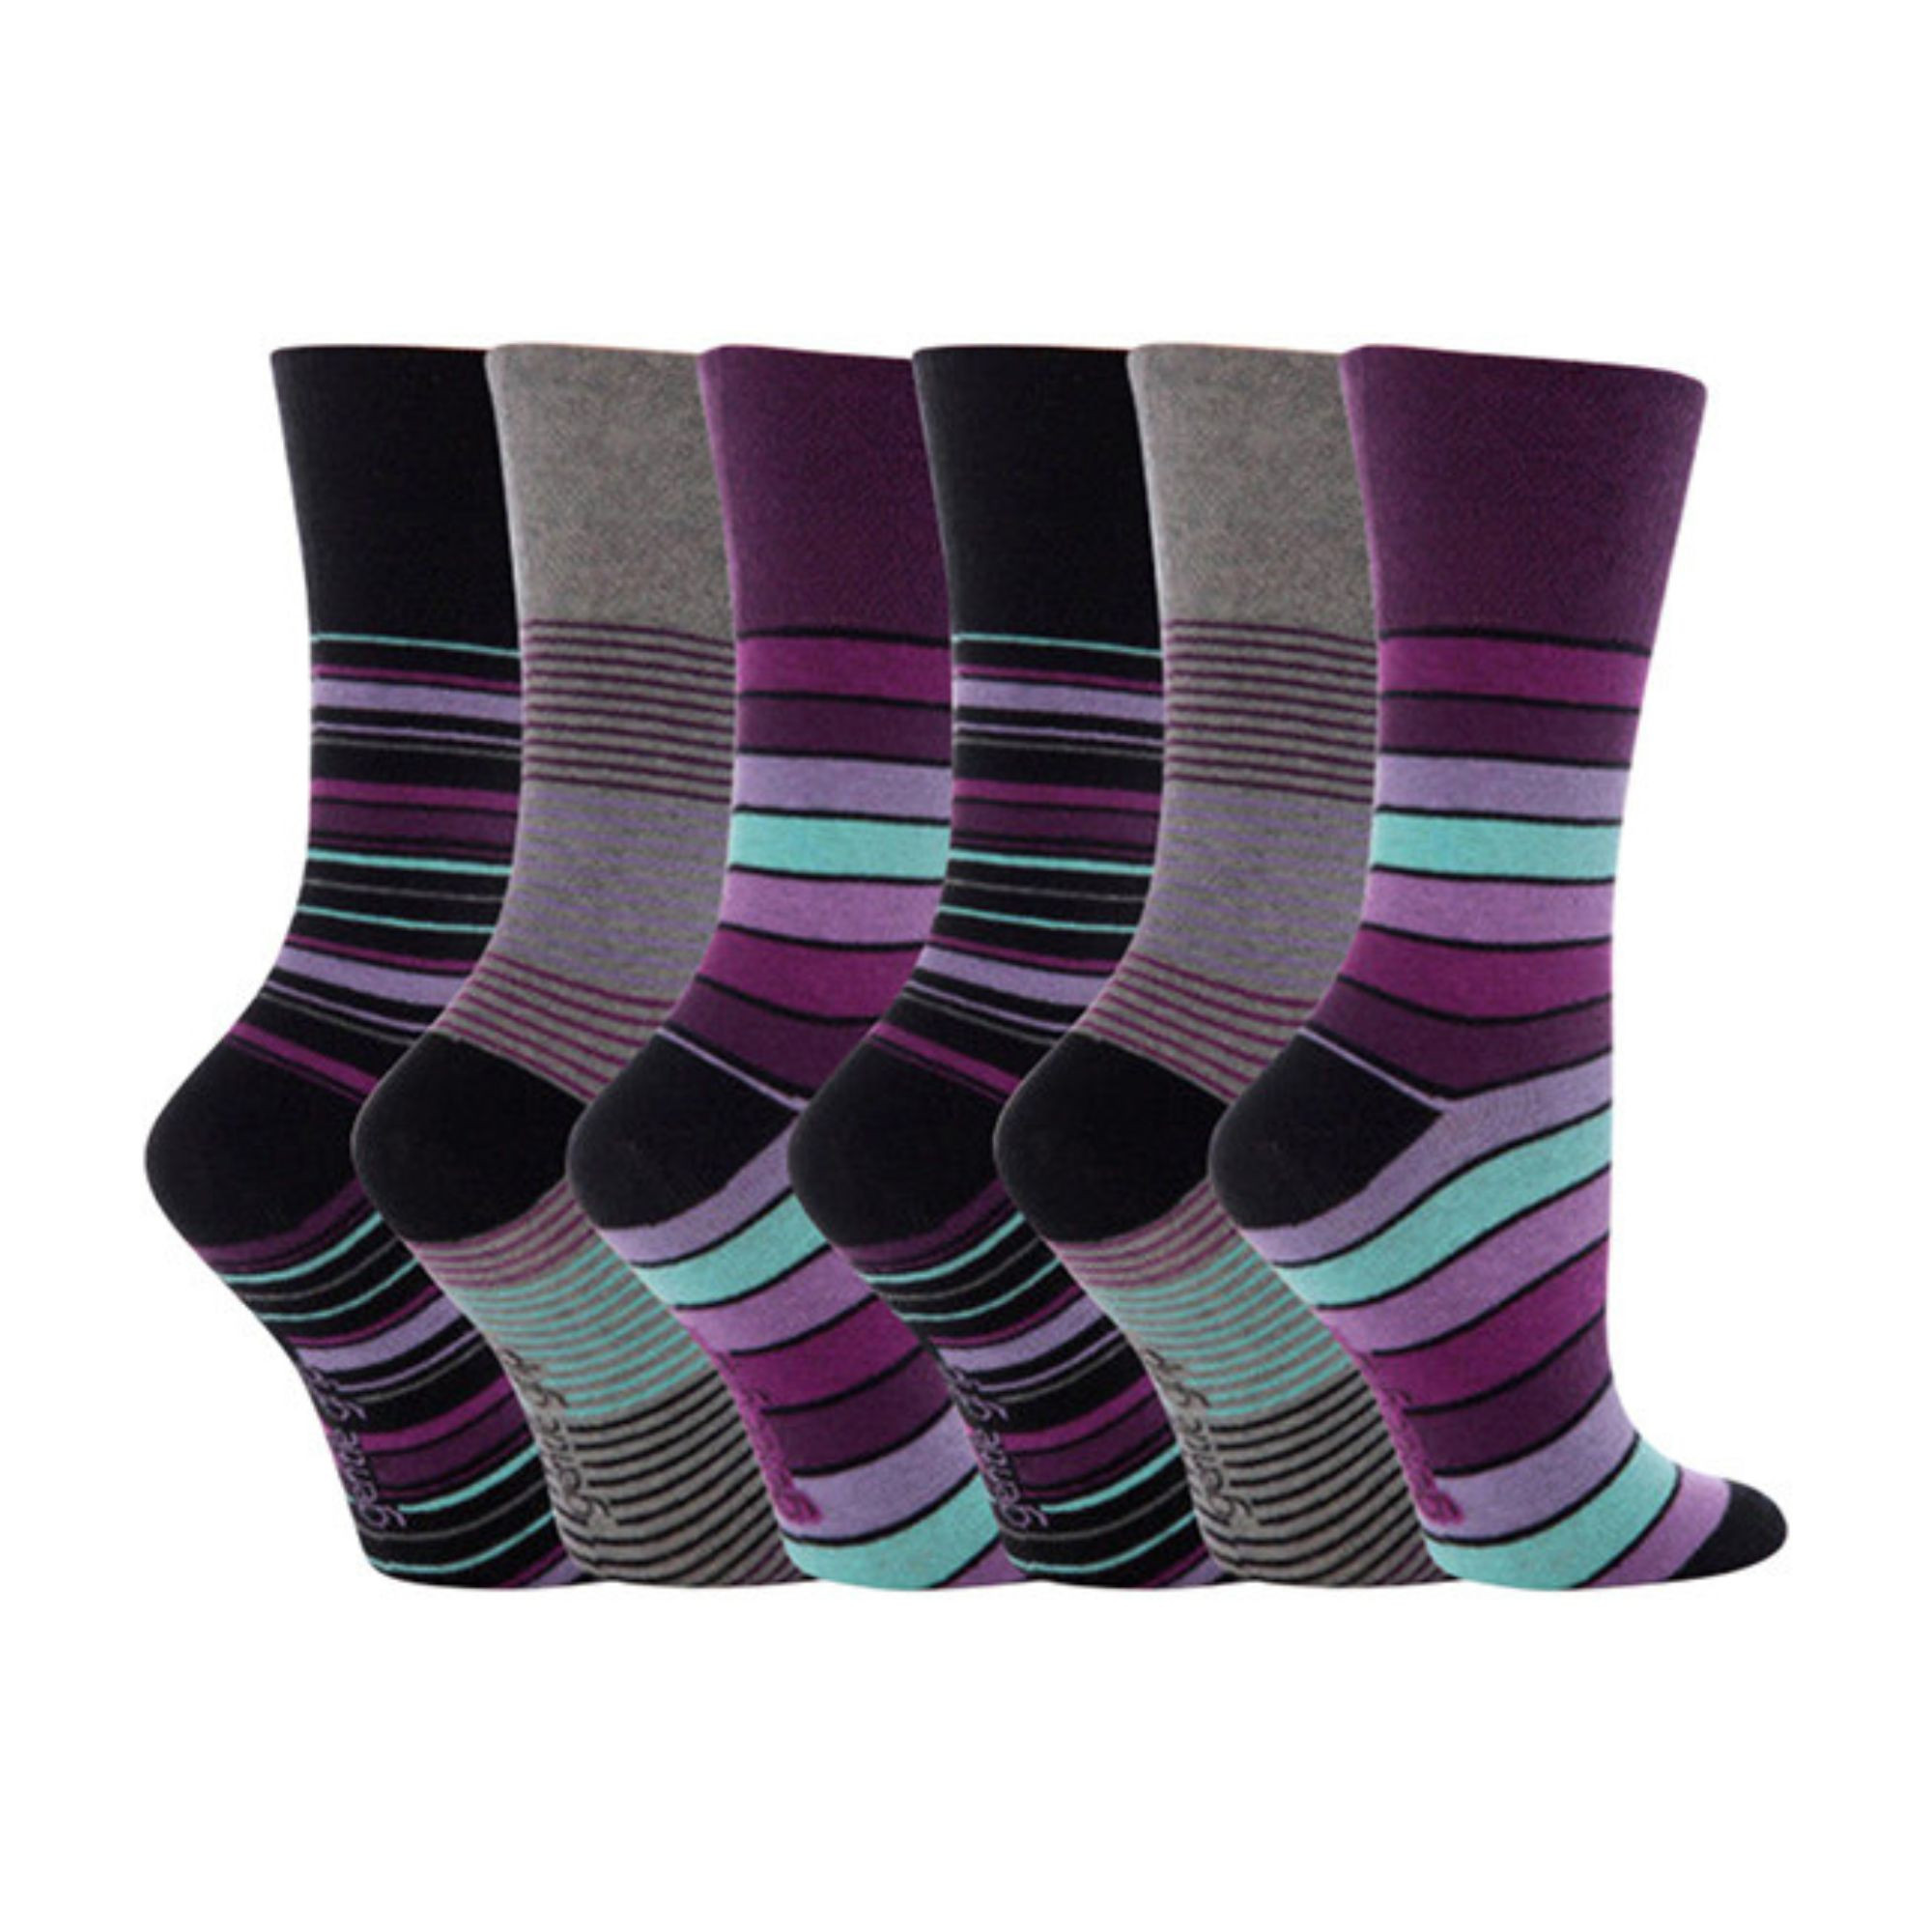 Ladies Soft top- Non elasticated Socks. ladies gentle grip socks